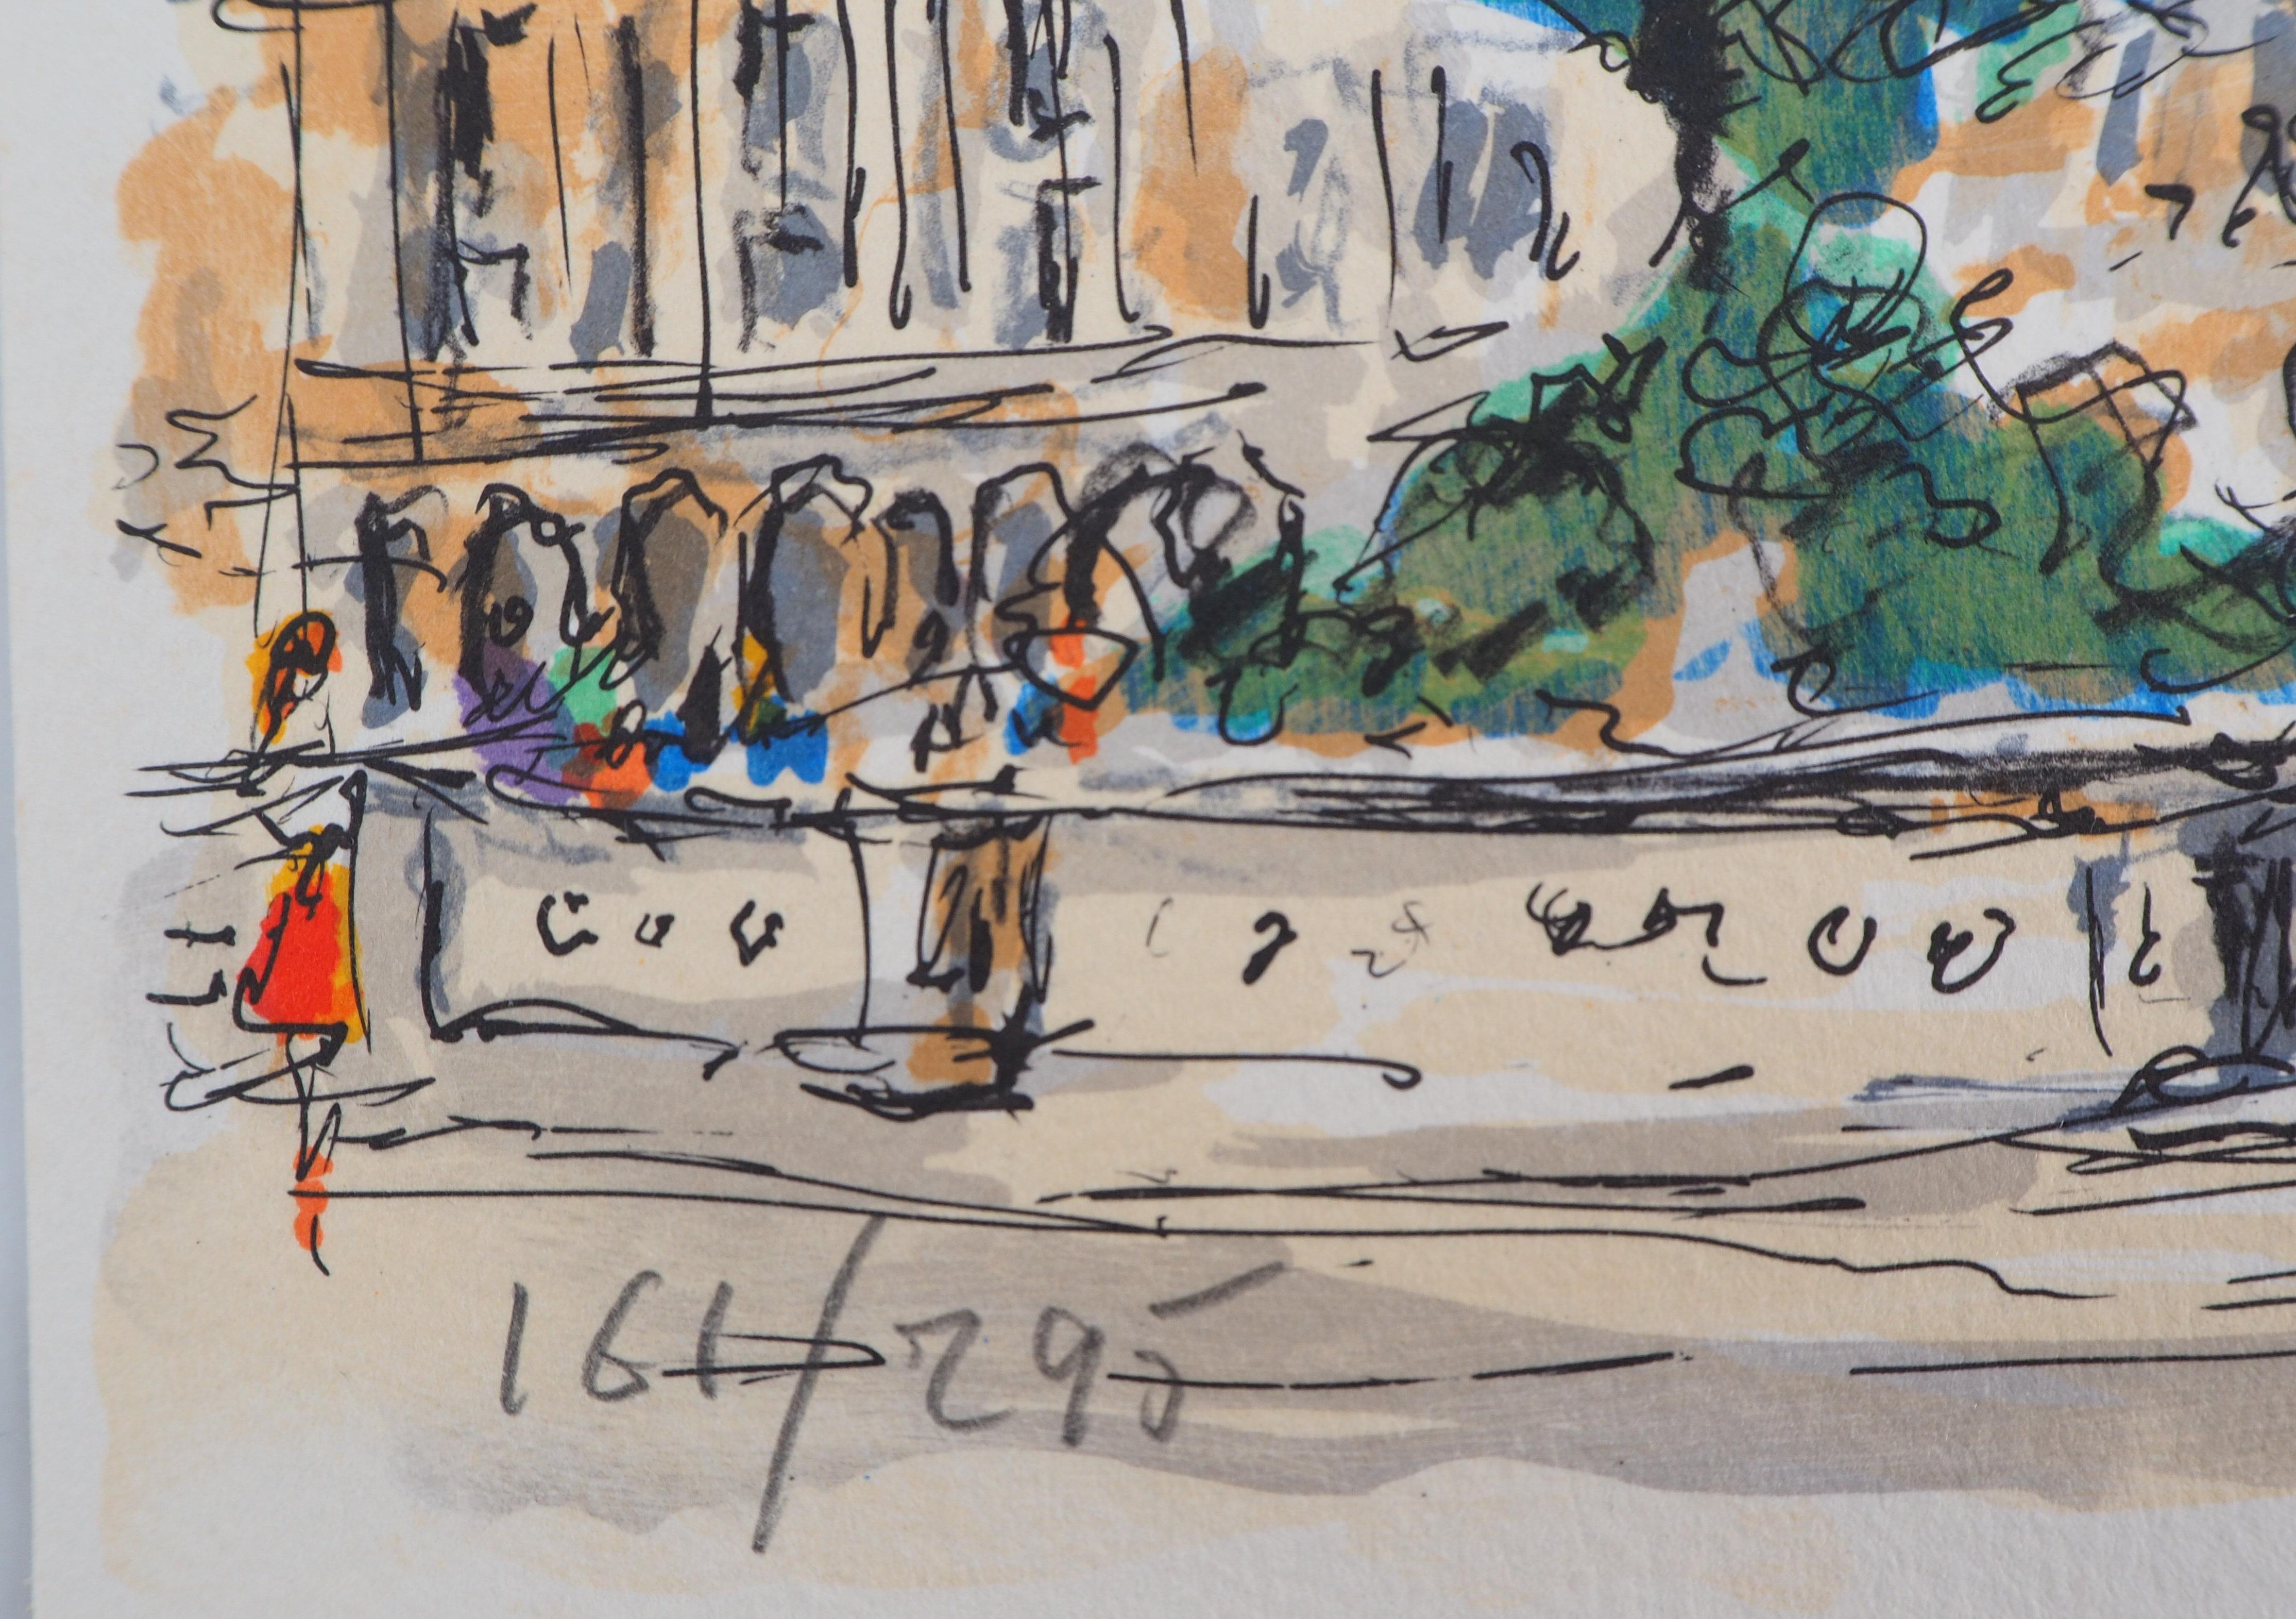 Urbain HUCHET
Paris : Place de la Concorde et Ambassade américaine

Lithographie originale, 1960
Signé au crayon par l'artiste
Numéroté / 295 exemplaires
Sur papier vélin, format 19 x 28 cm (environ 8 x 11 pouces)

Excellent état